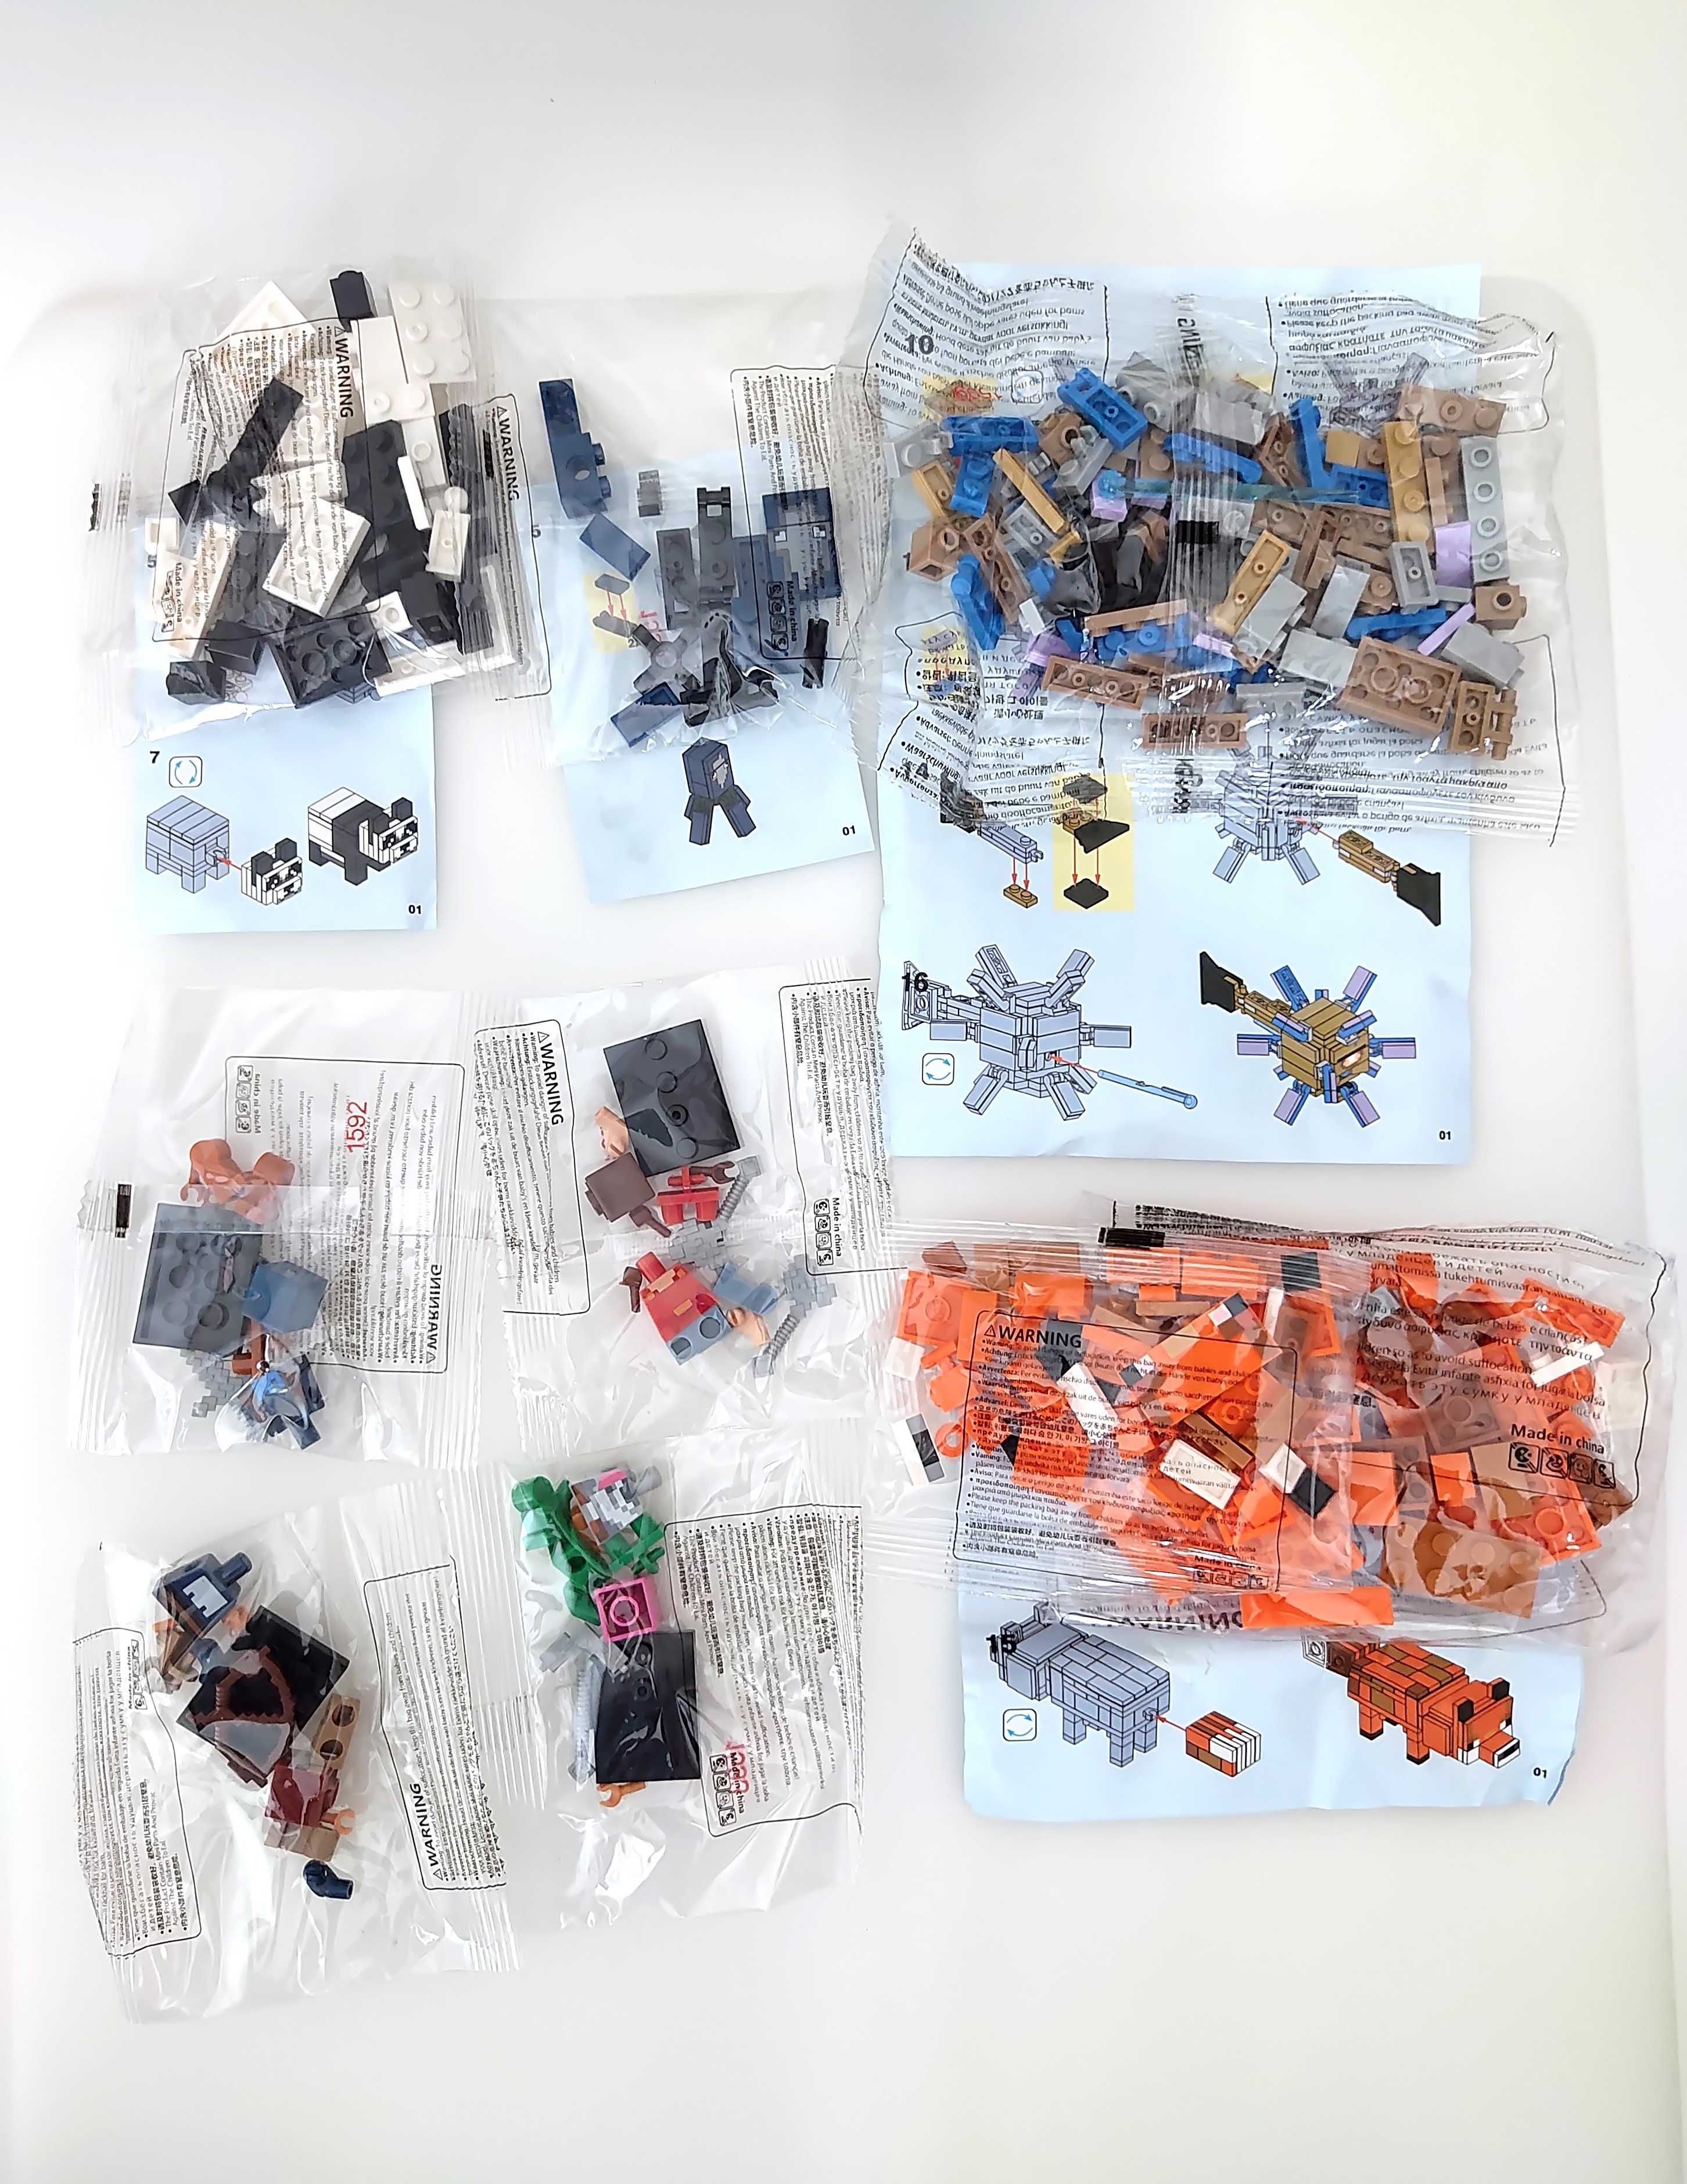 Coleção Minecraft nº1 - 4 Bonecos + 4 Kits (compatíveis com Lego)